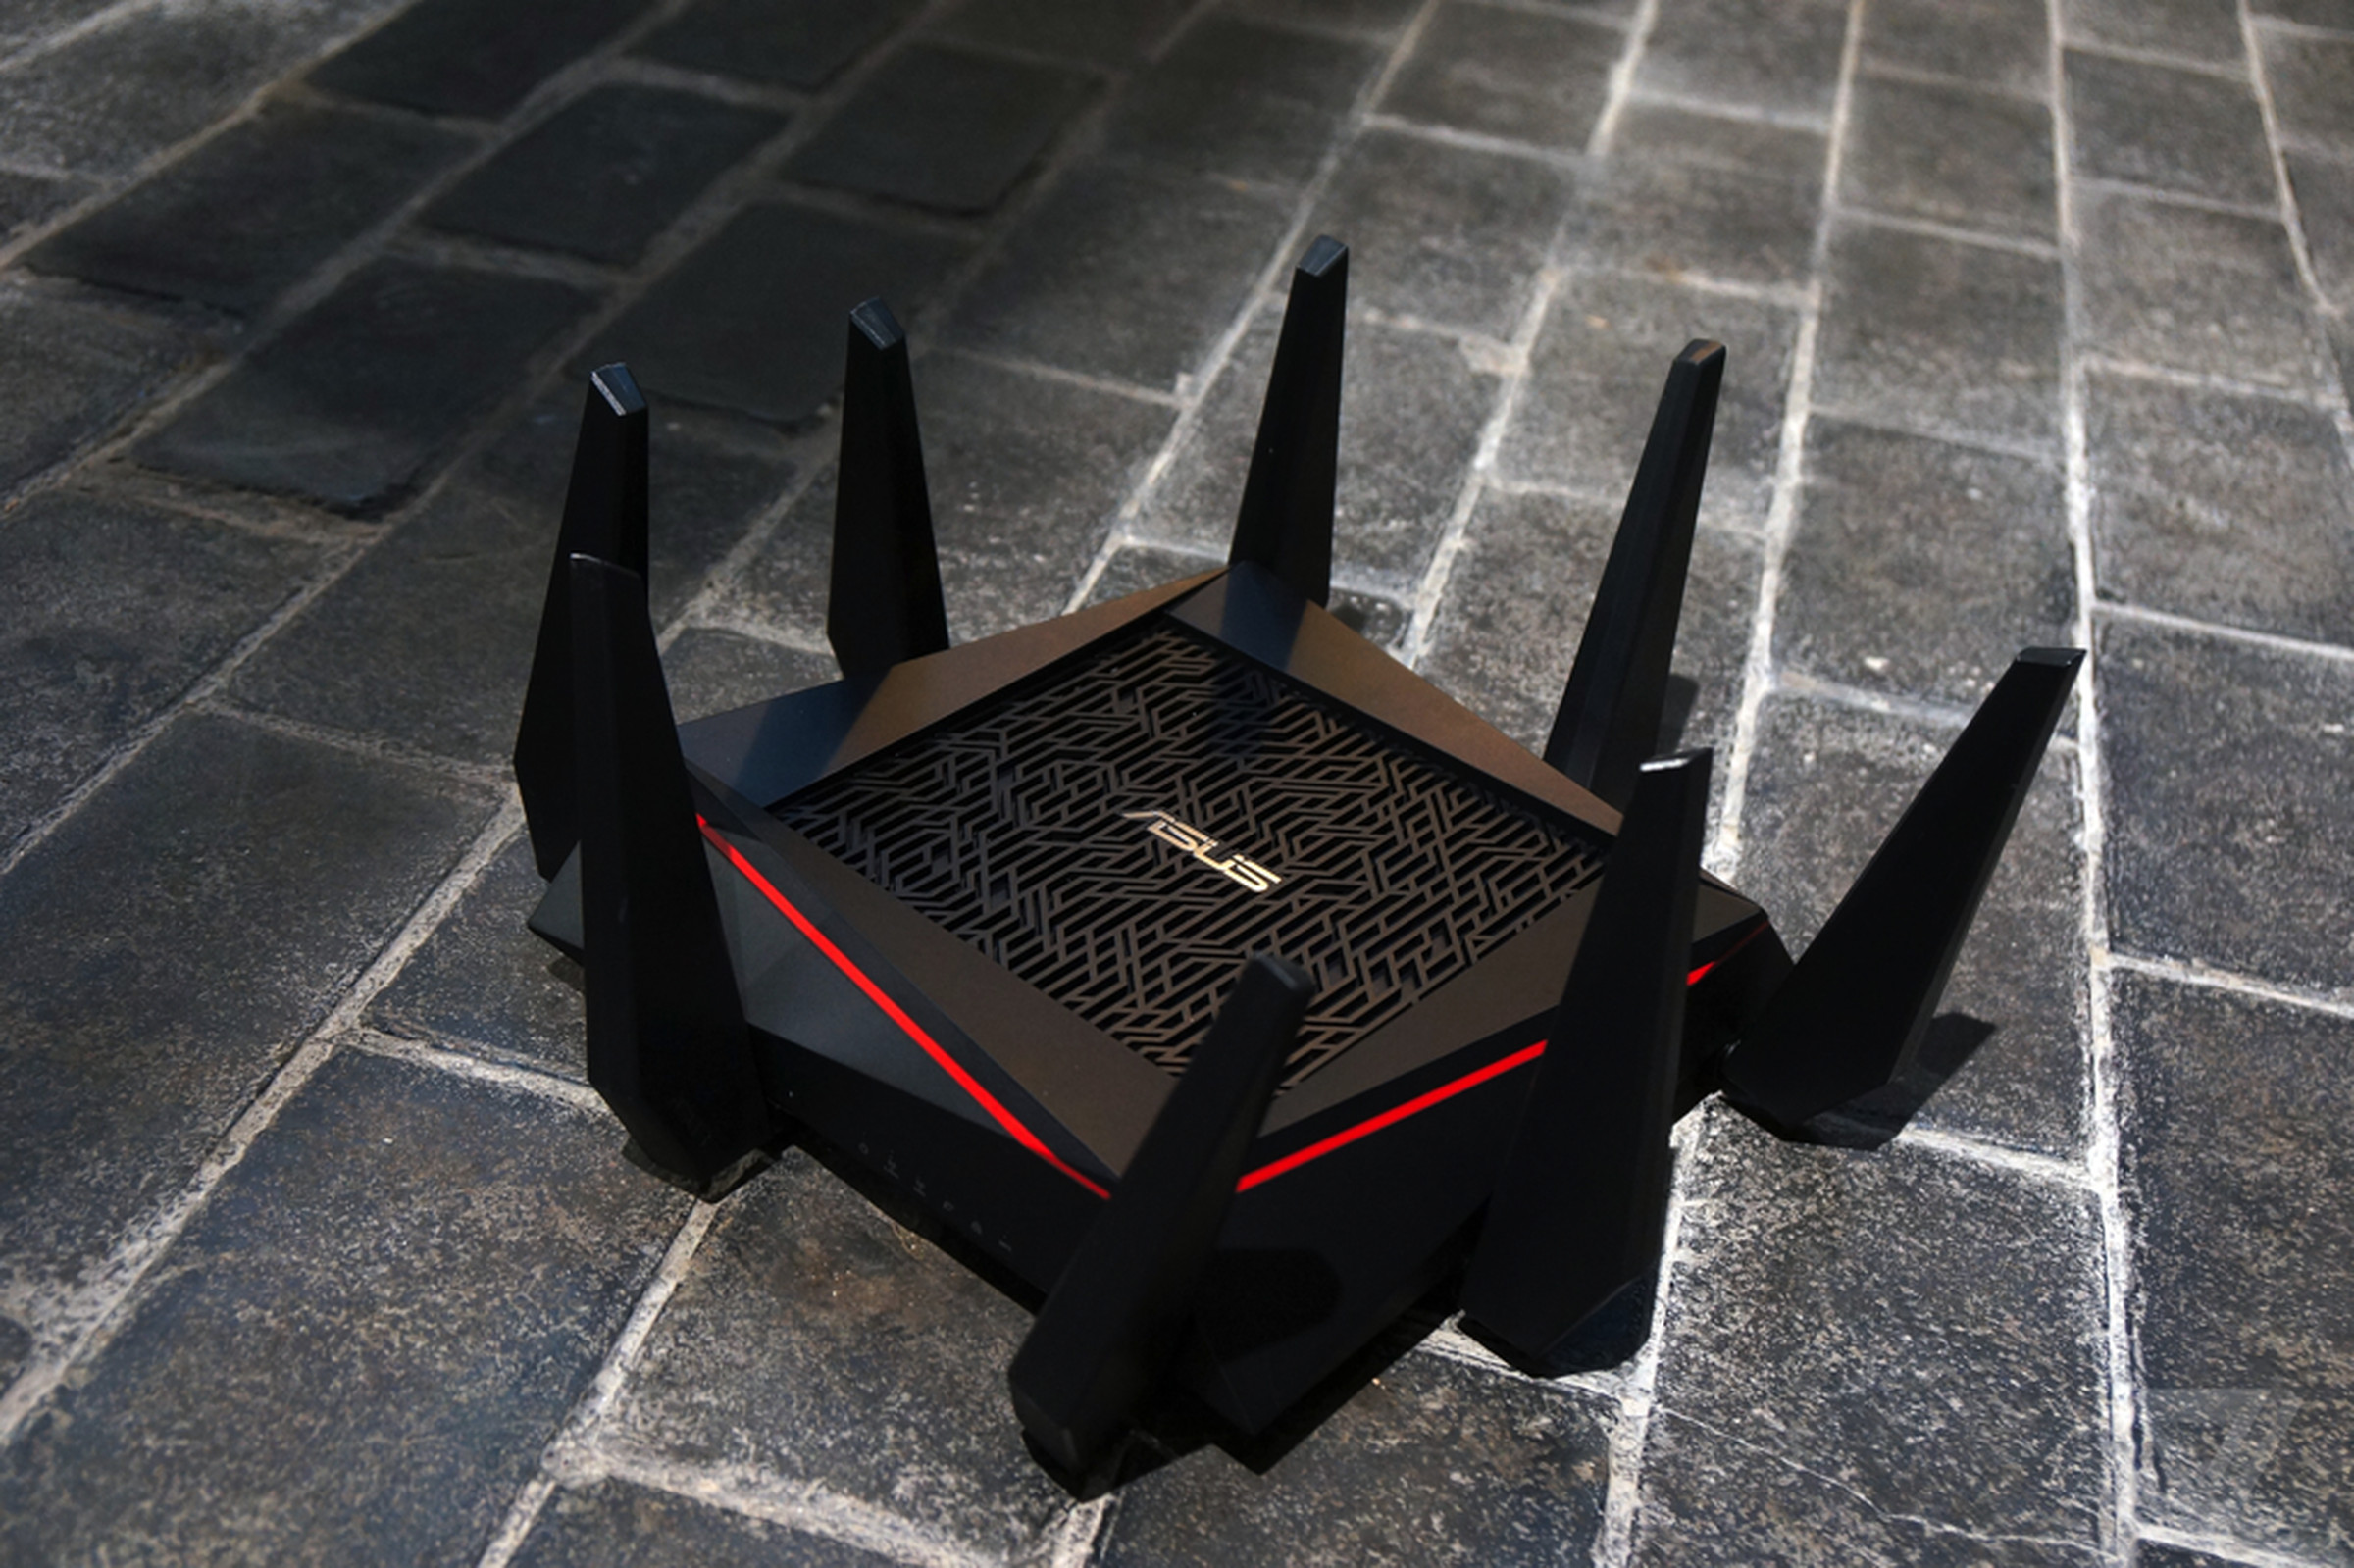 Asus's arachnid router